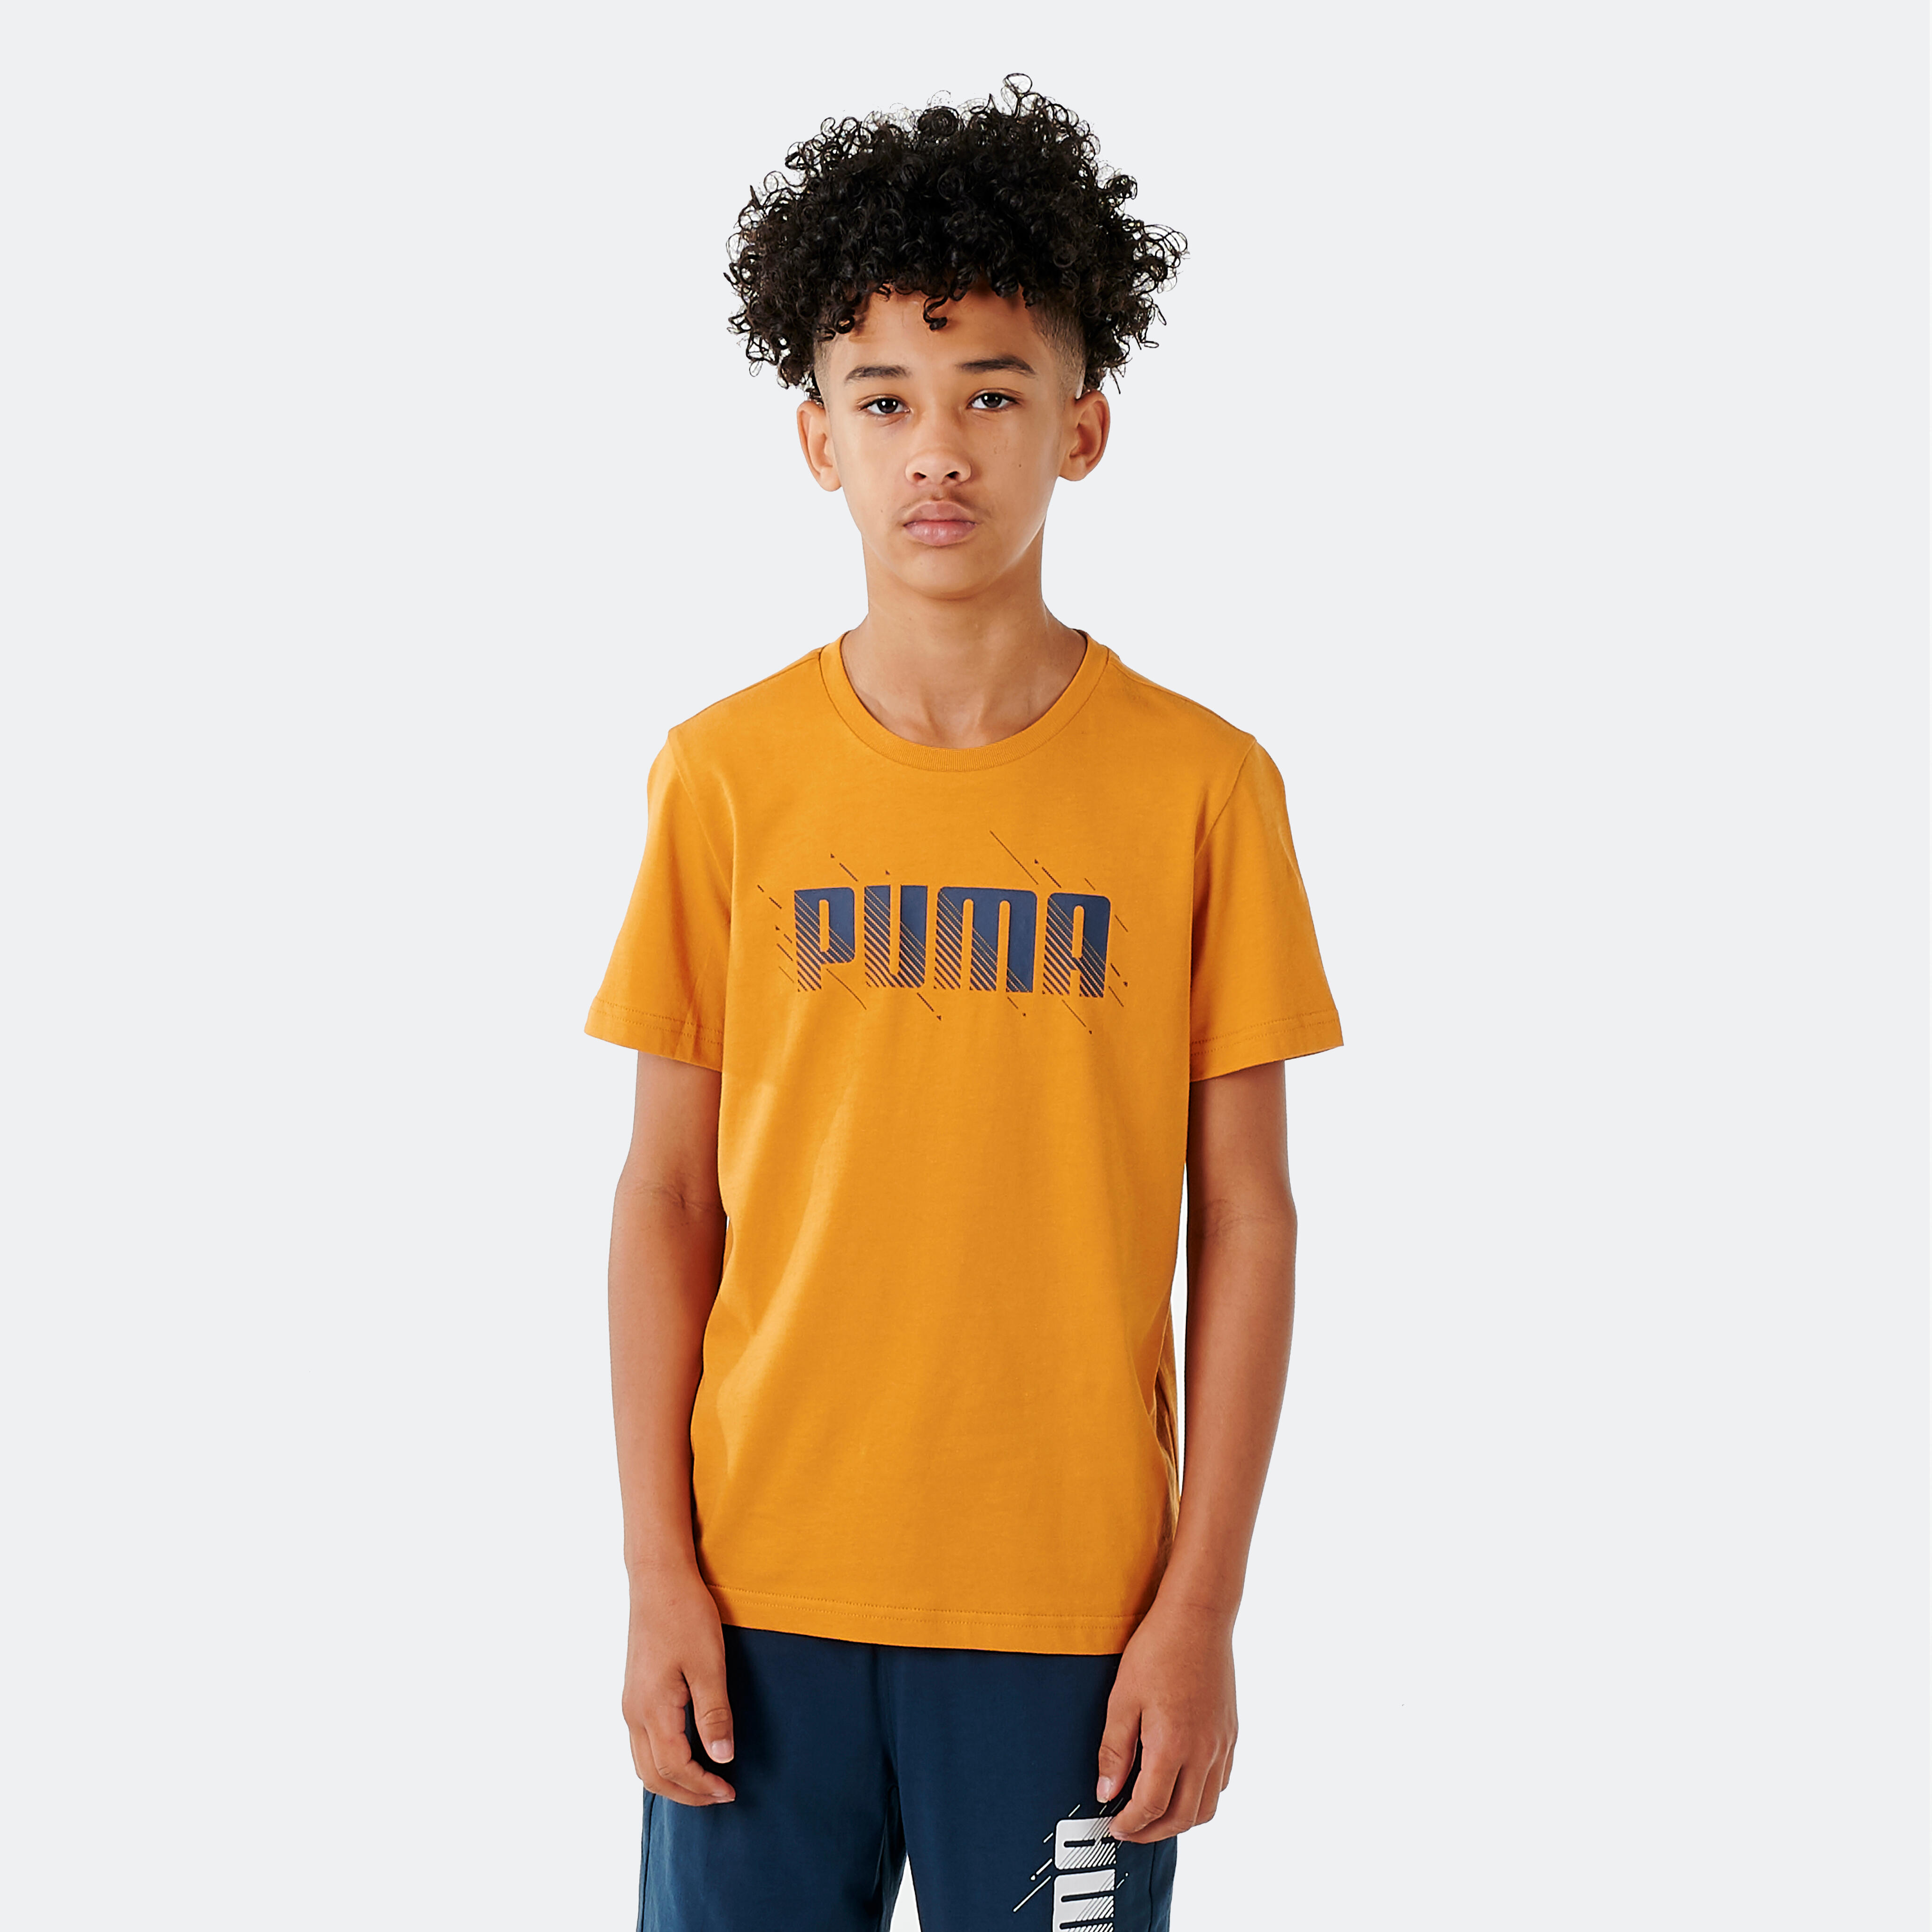 T-shirt Puma Junior Orange